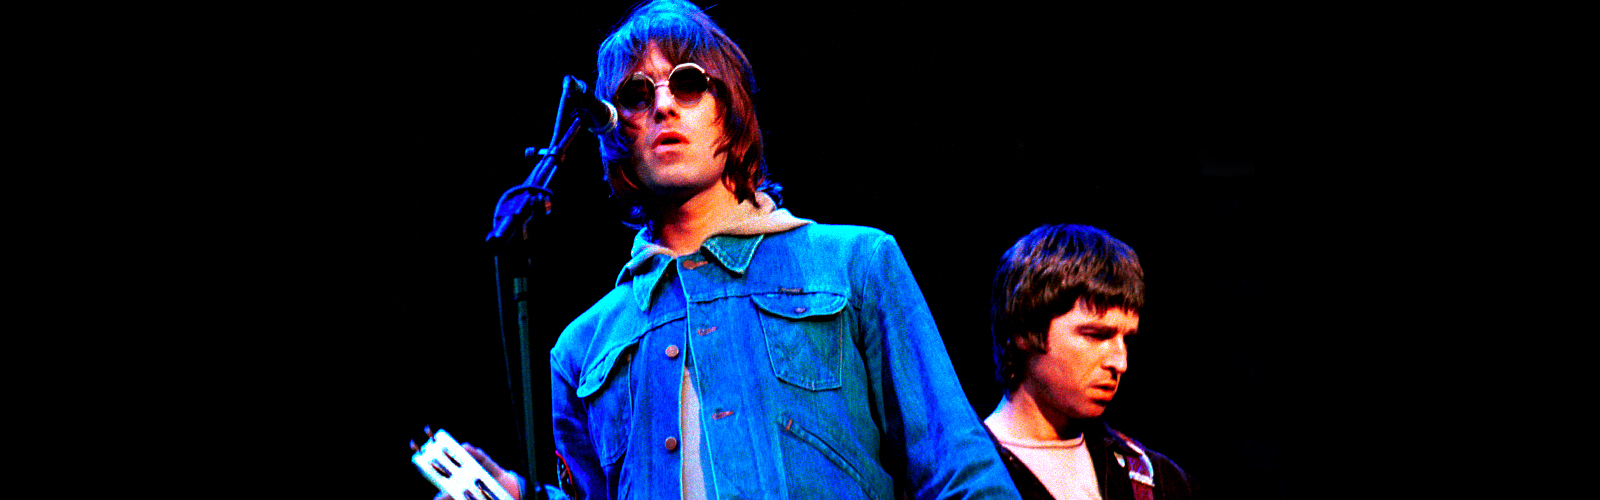 Oasis Best Songs Ranked